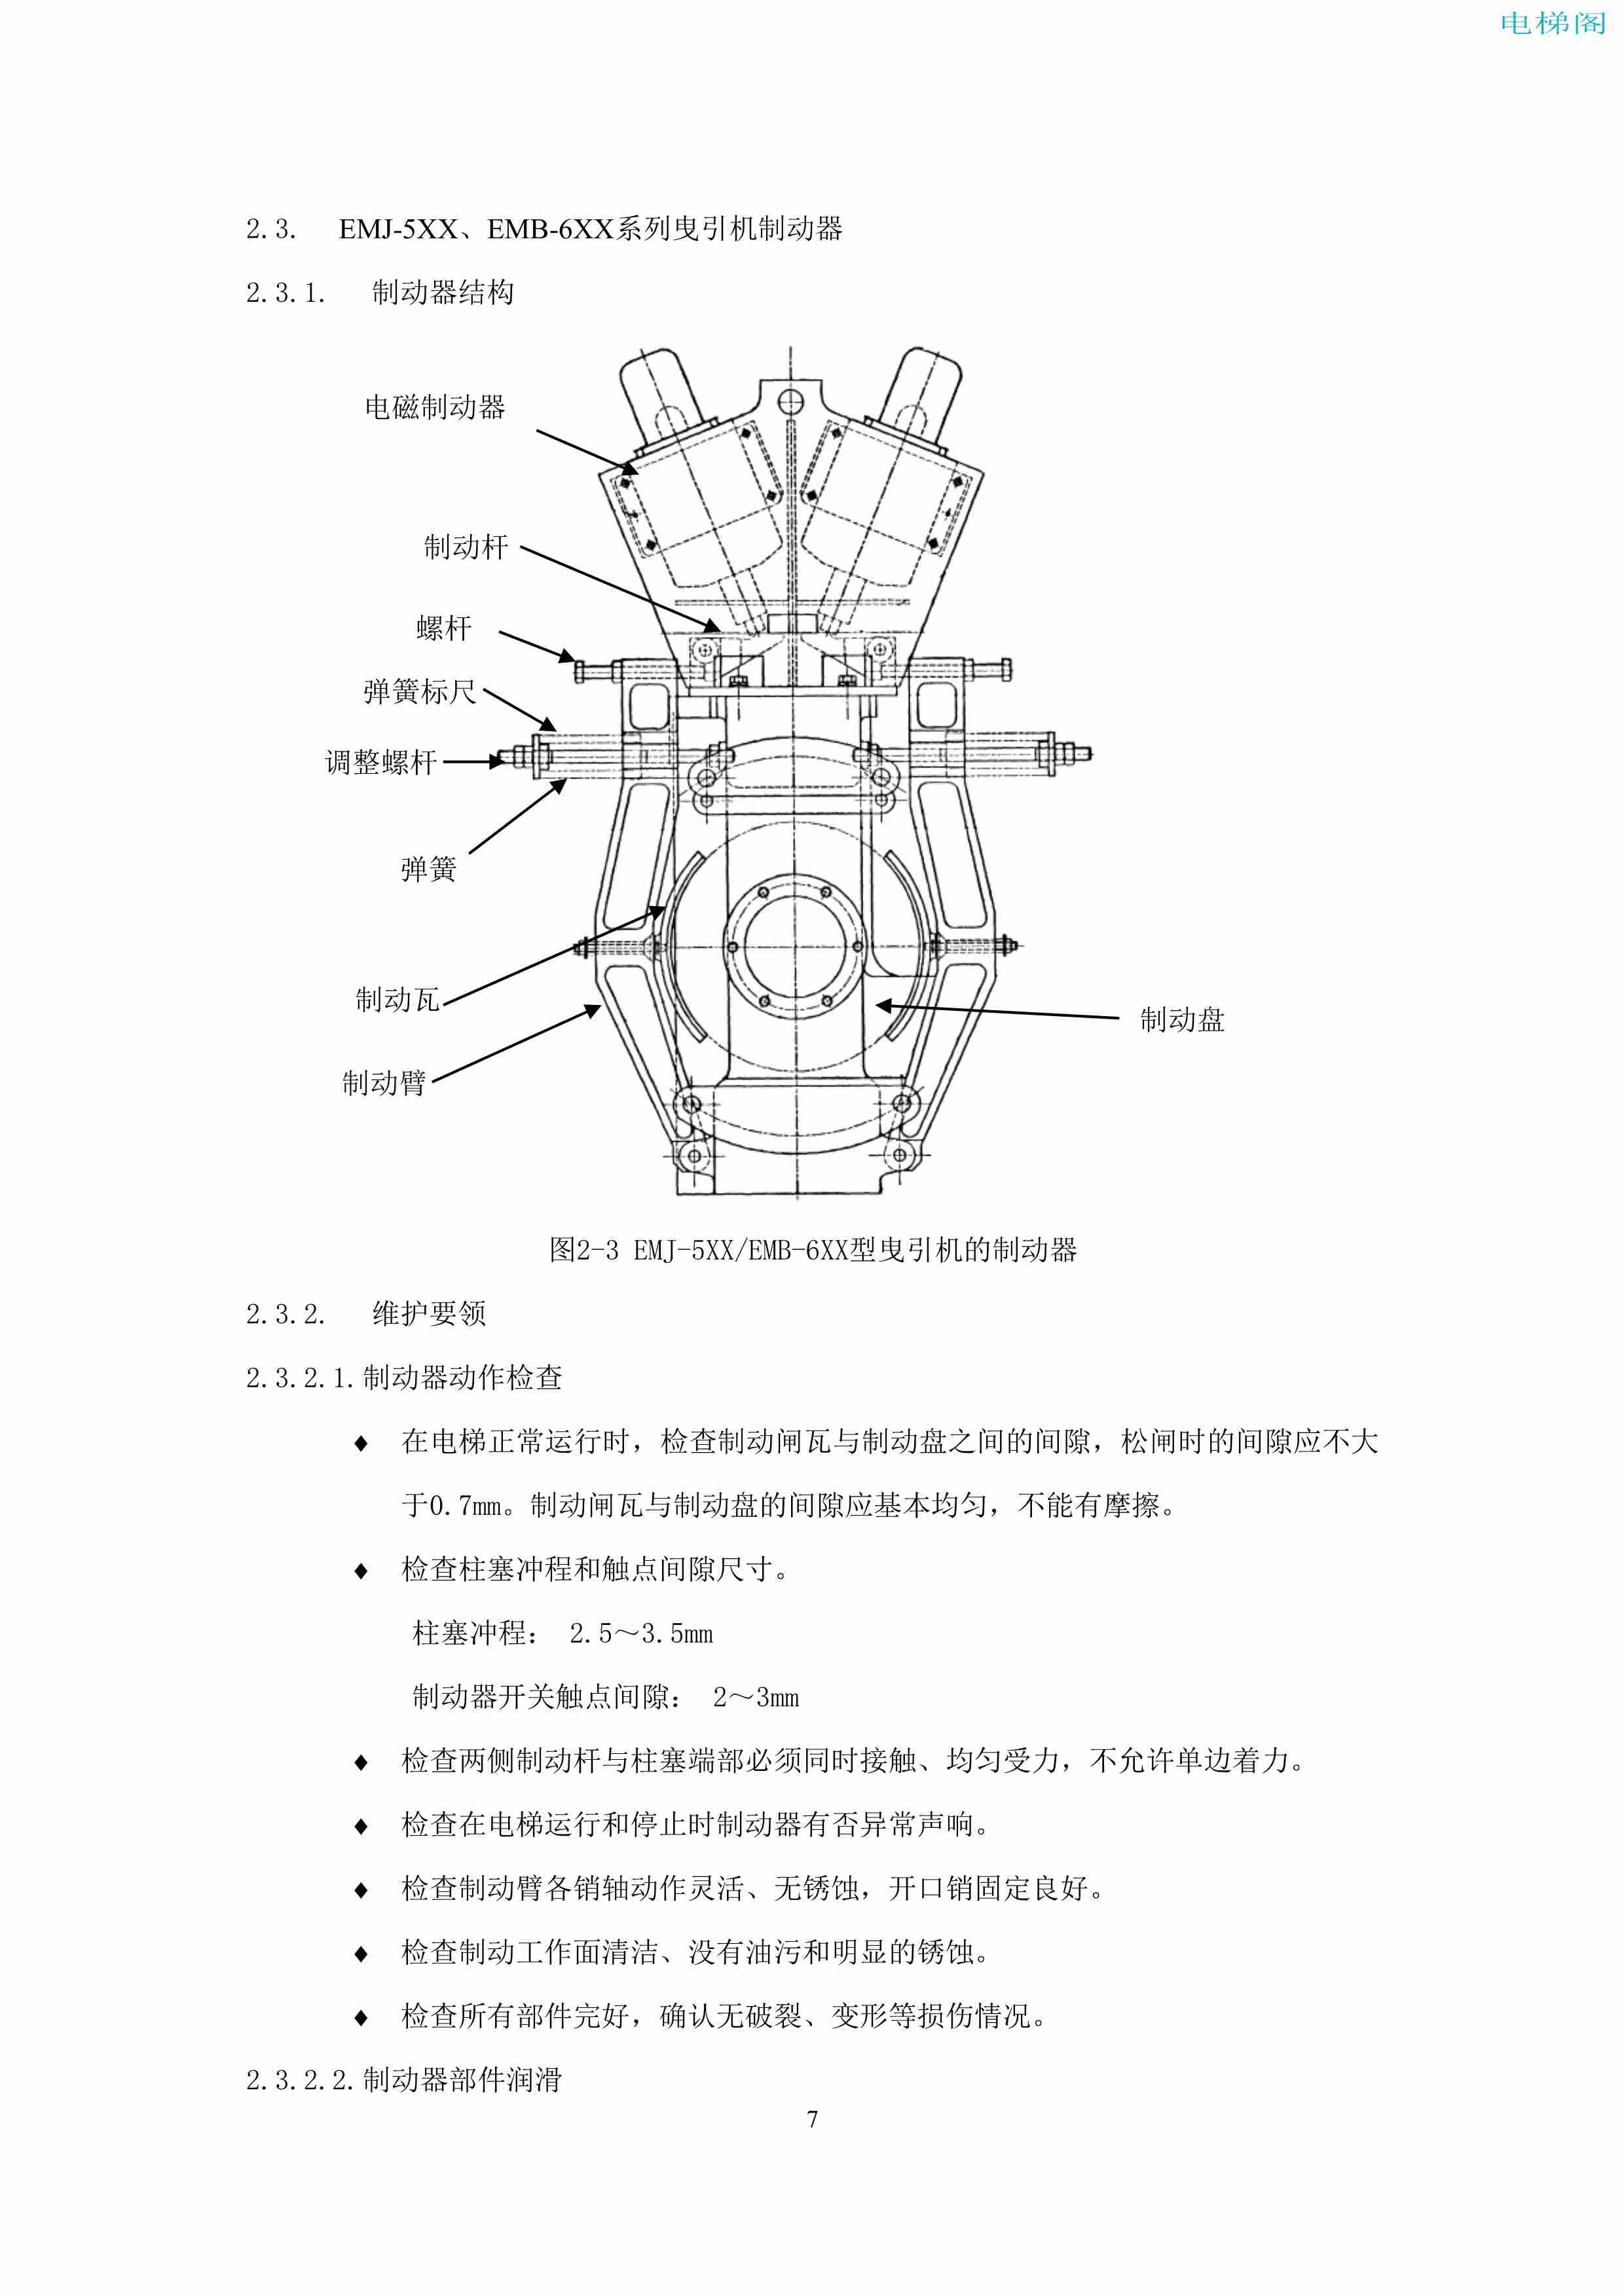 上海三菱电梯有限公司电梯制动器维护作业要领汇编_9.jpg